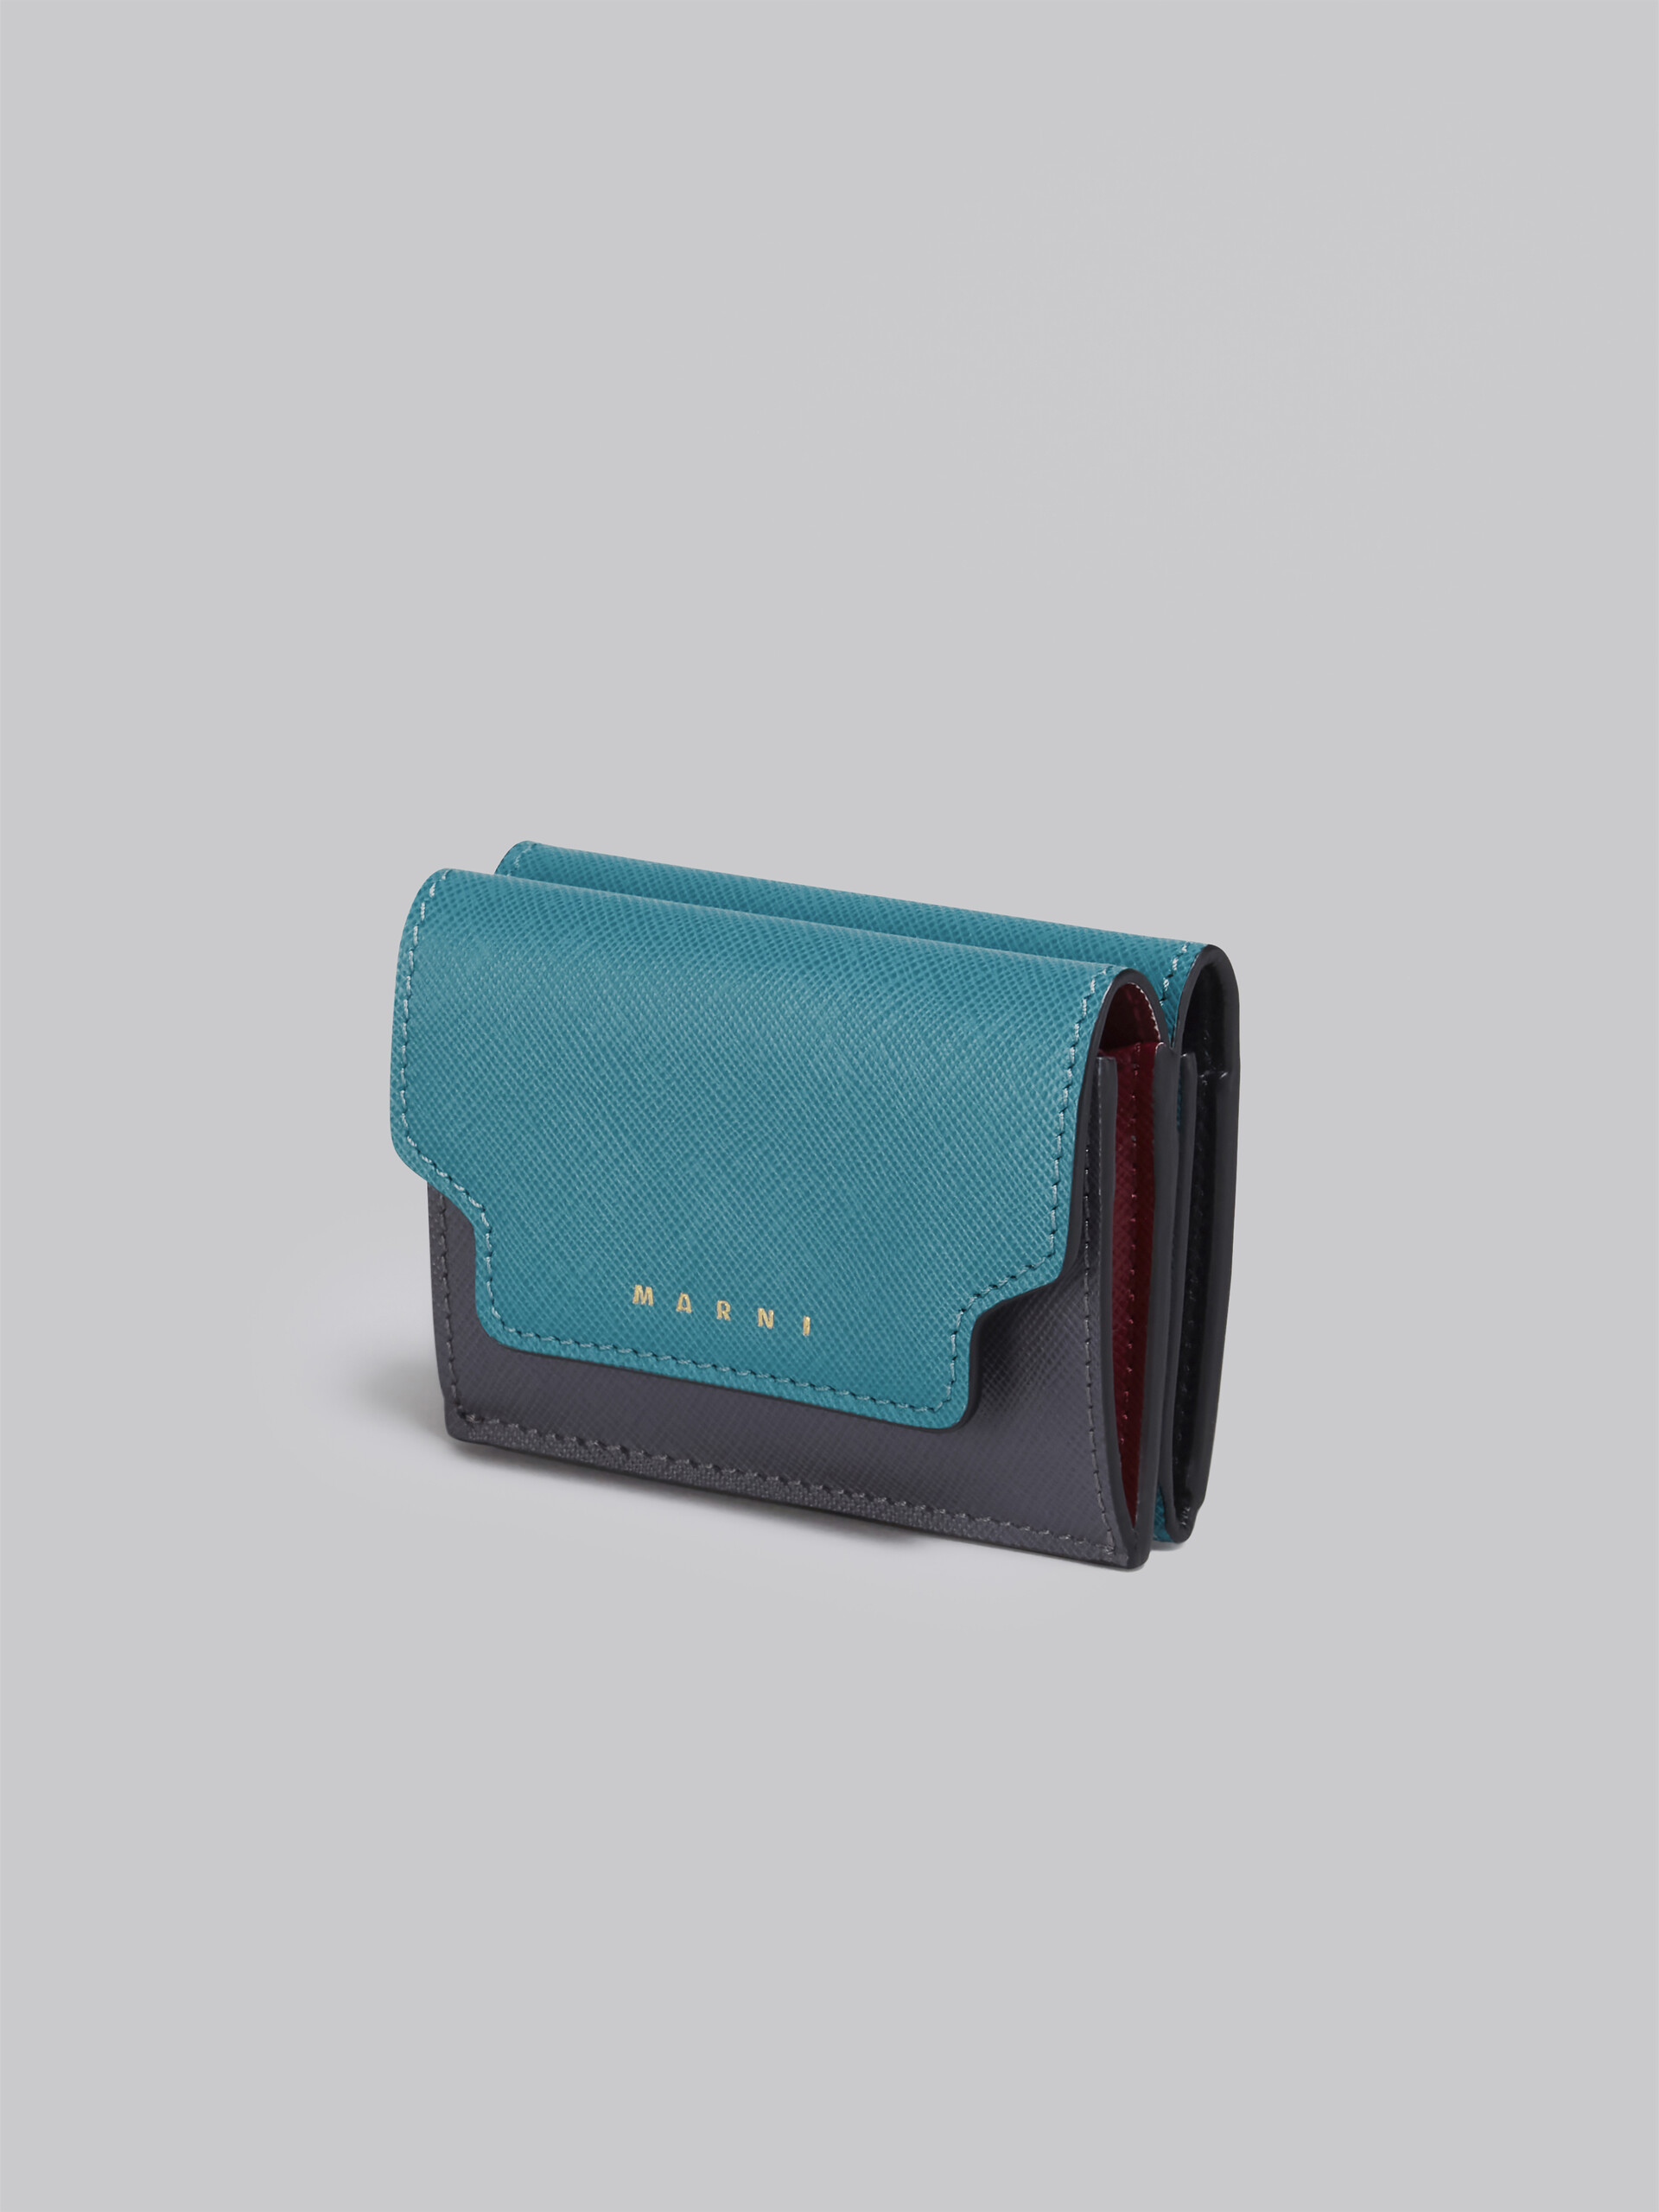 ブルー グレー レッド サフィアーノレザー製 三つ折りウォレット - 財布 - Image 4